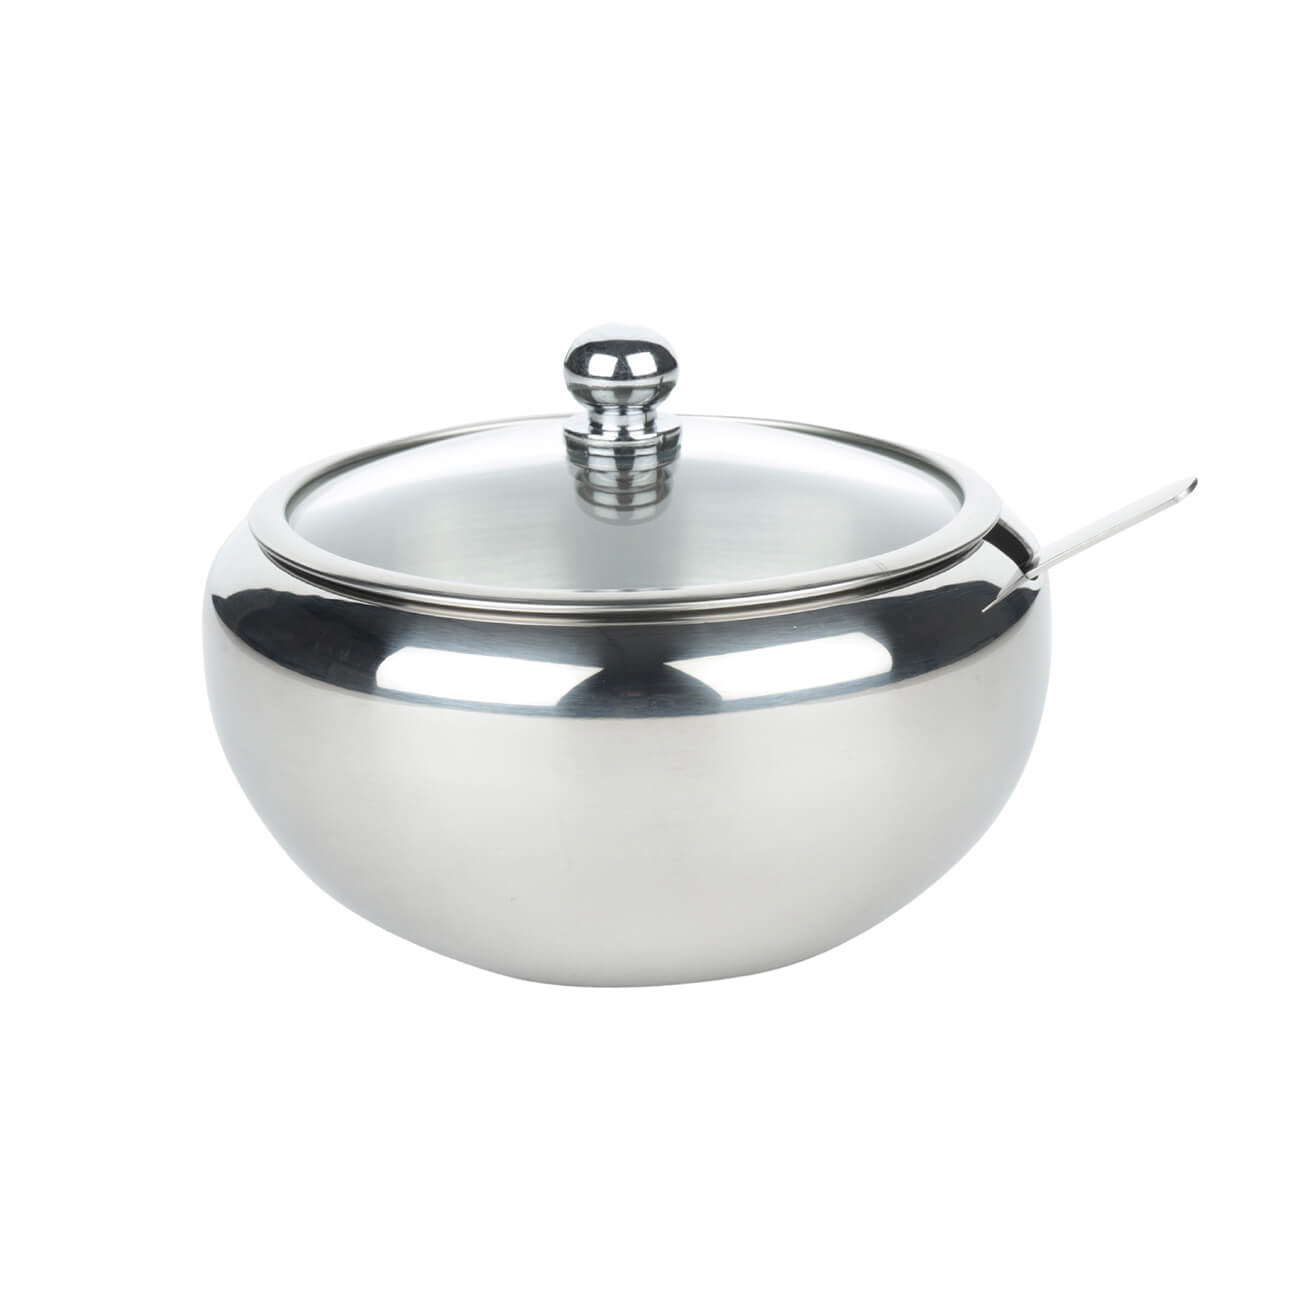 Sugar bowl, 9 cm, 500 ml, with spoon, steel, Classic изображение № 1